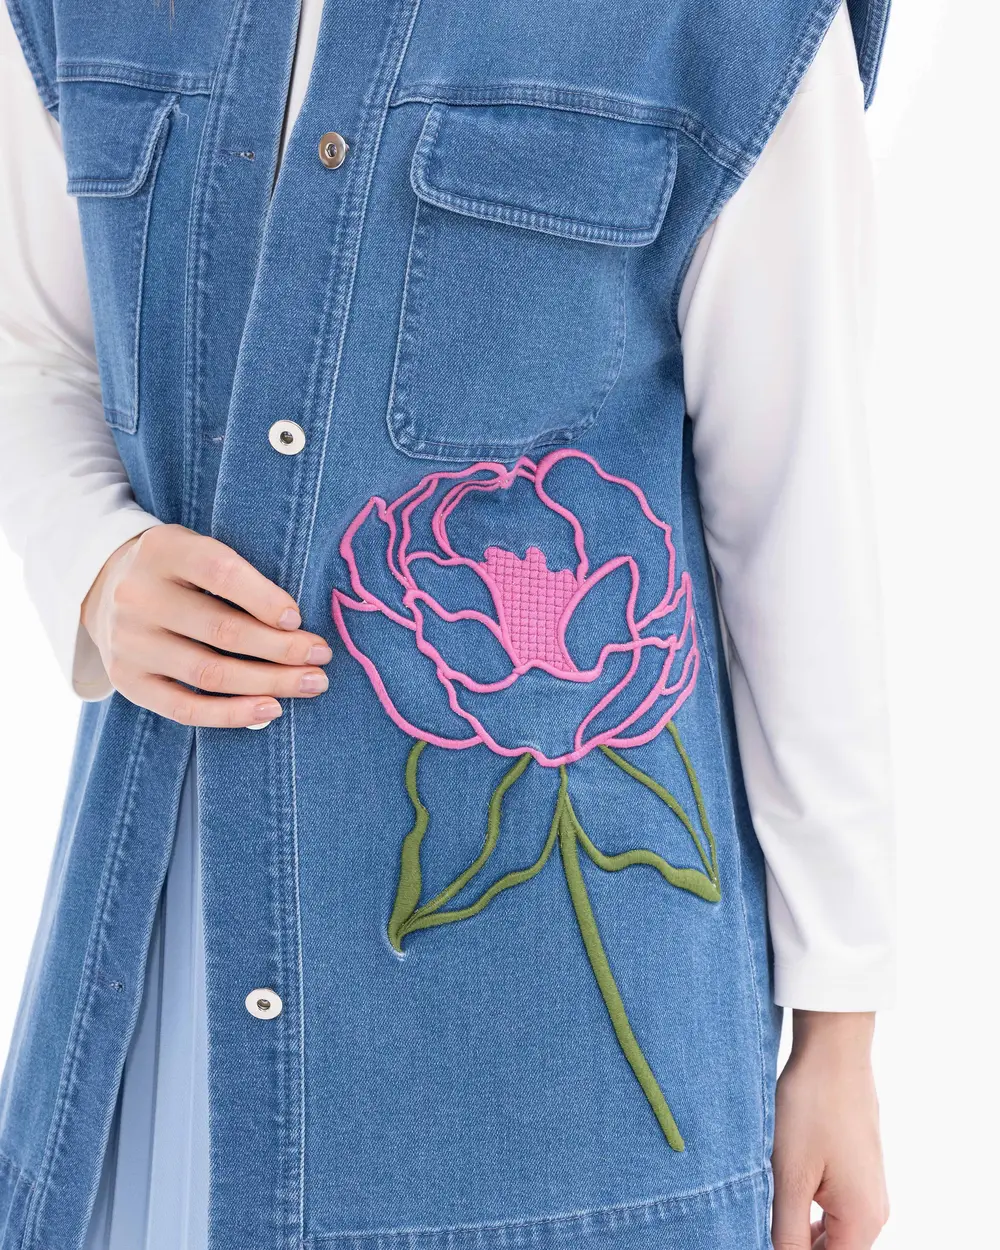 Flower Embroidered Hip Length Jean Vest